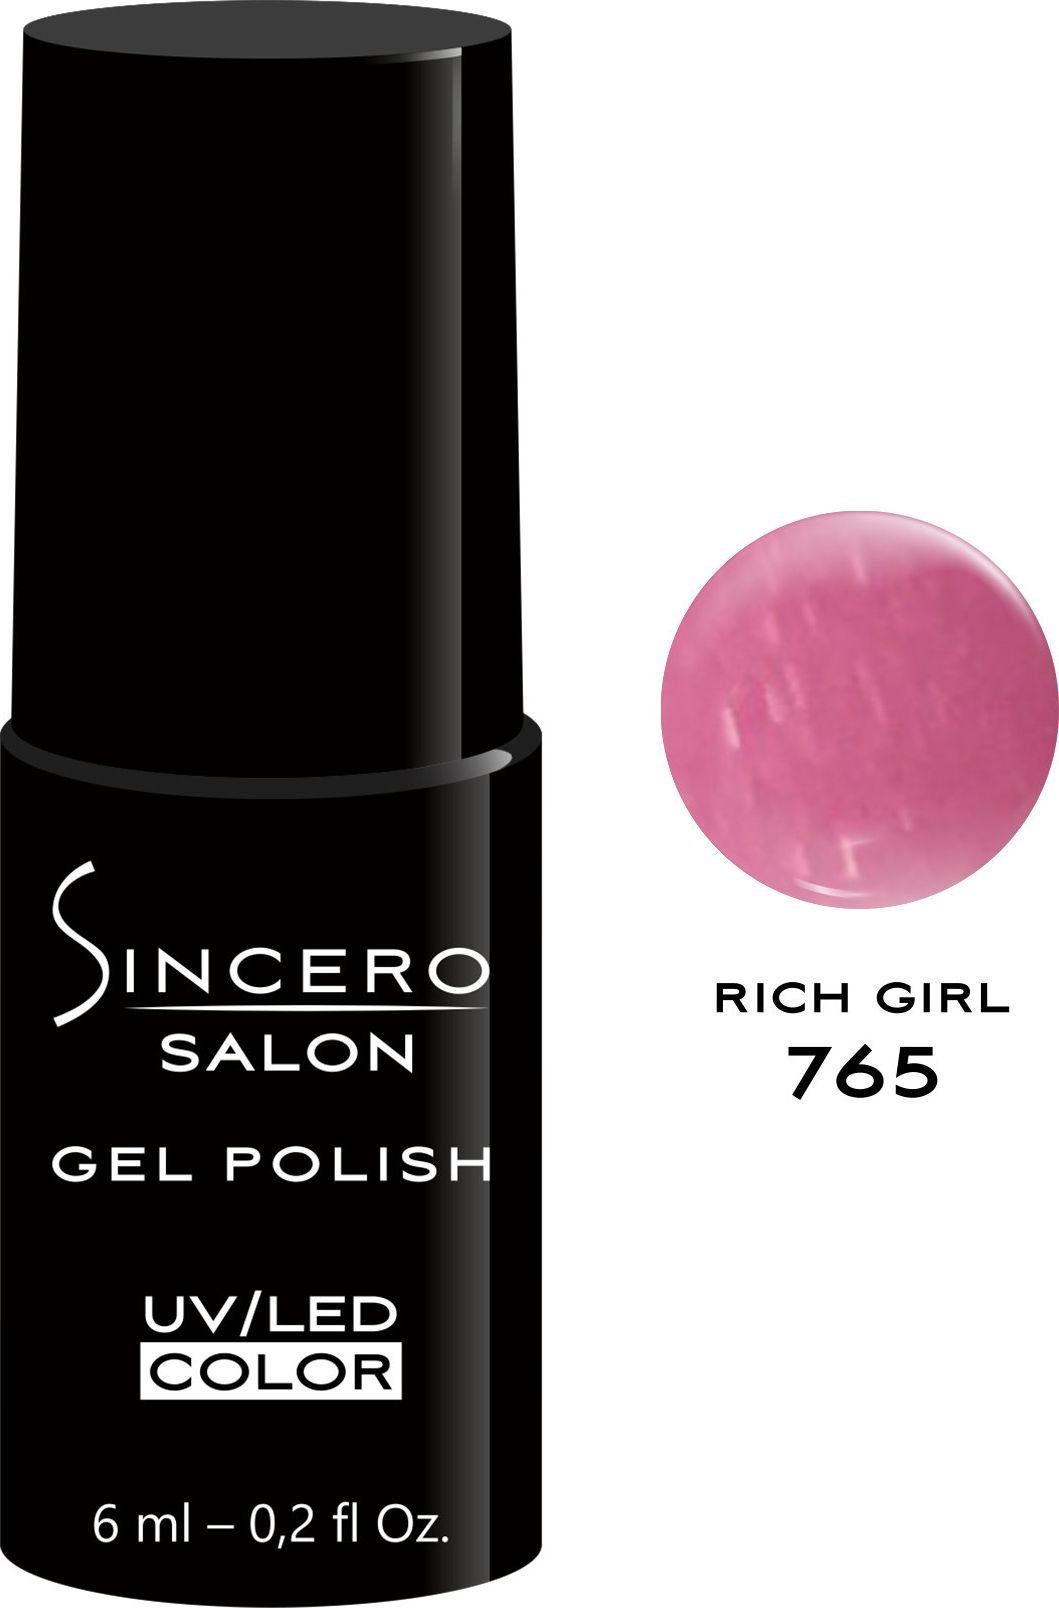 Sincero Salon Gel Polish UV/LED 765 Rich Girl 6ml